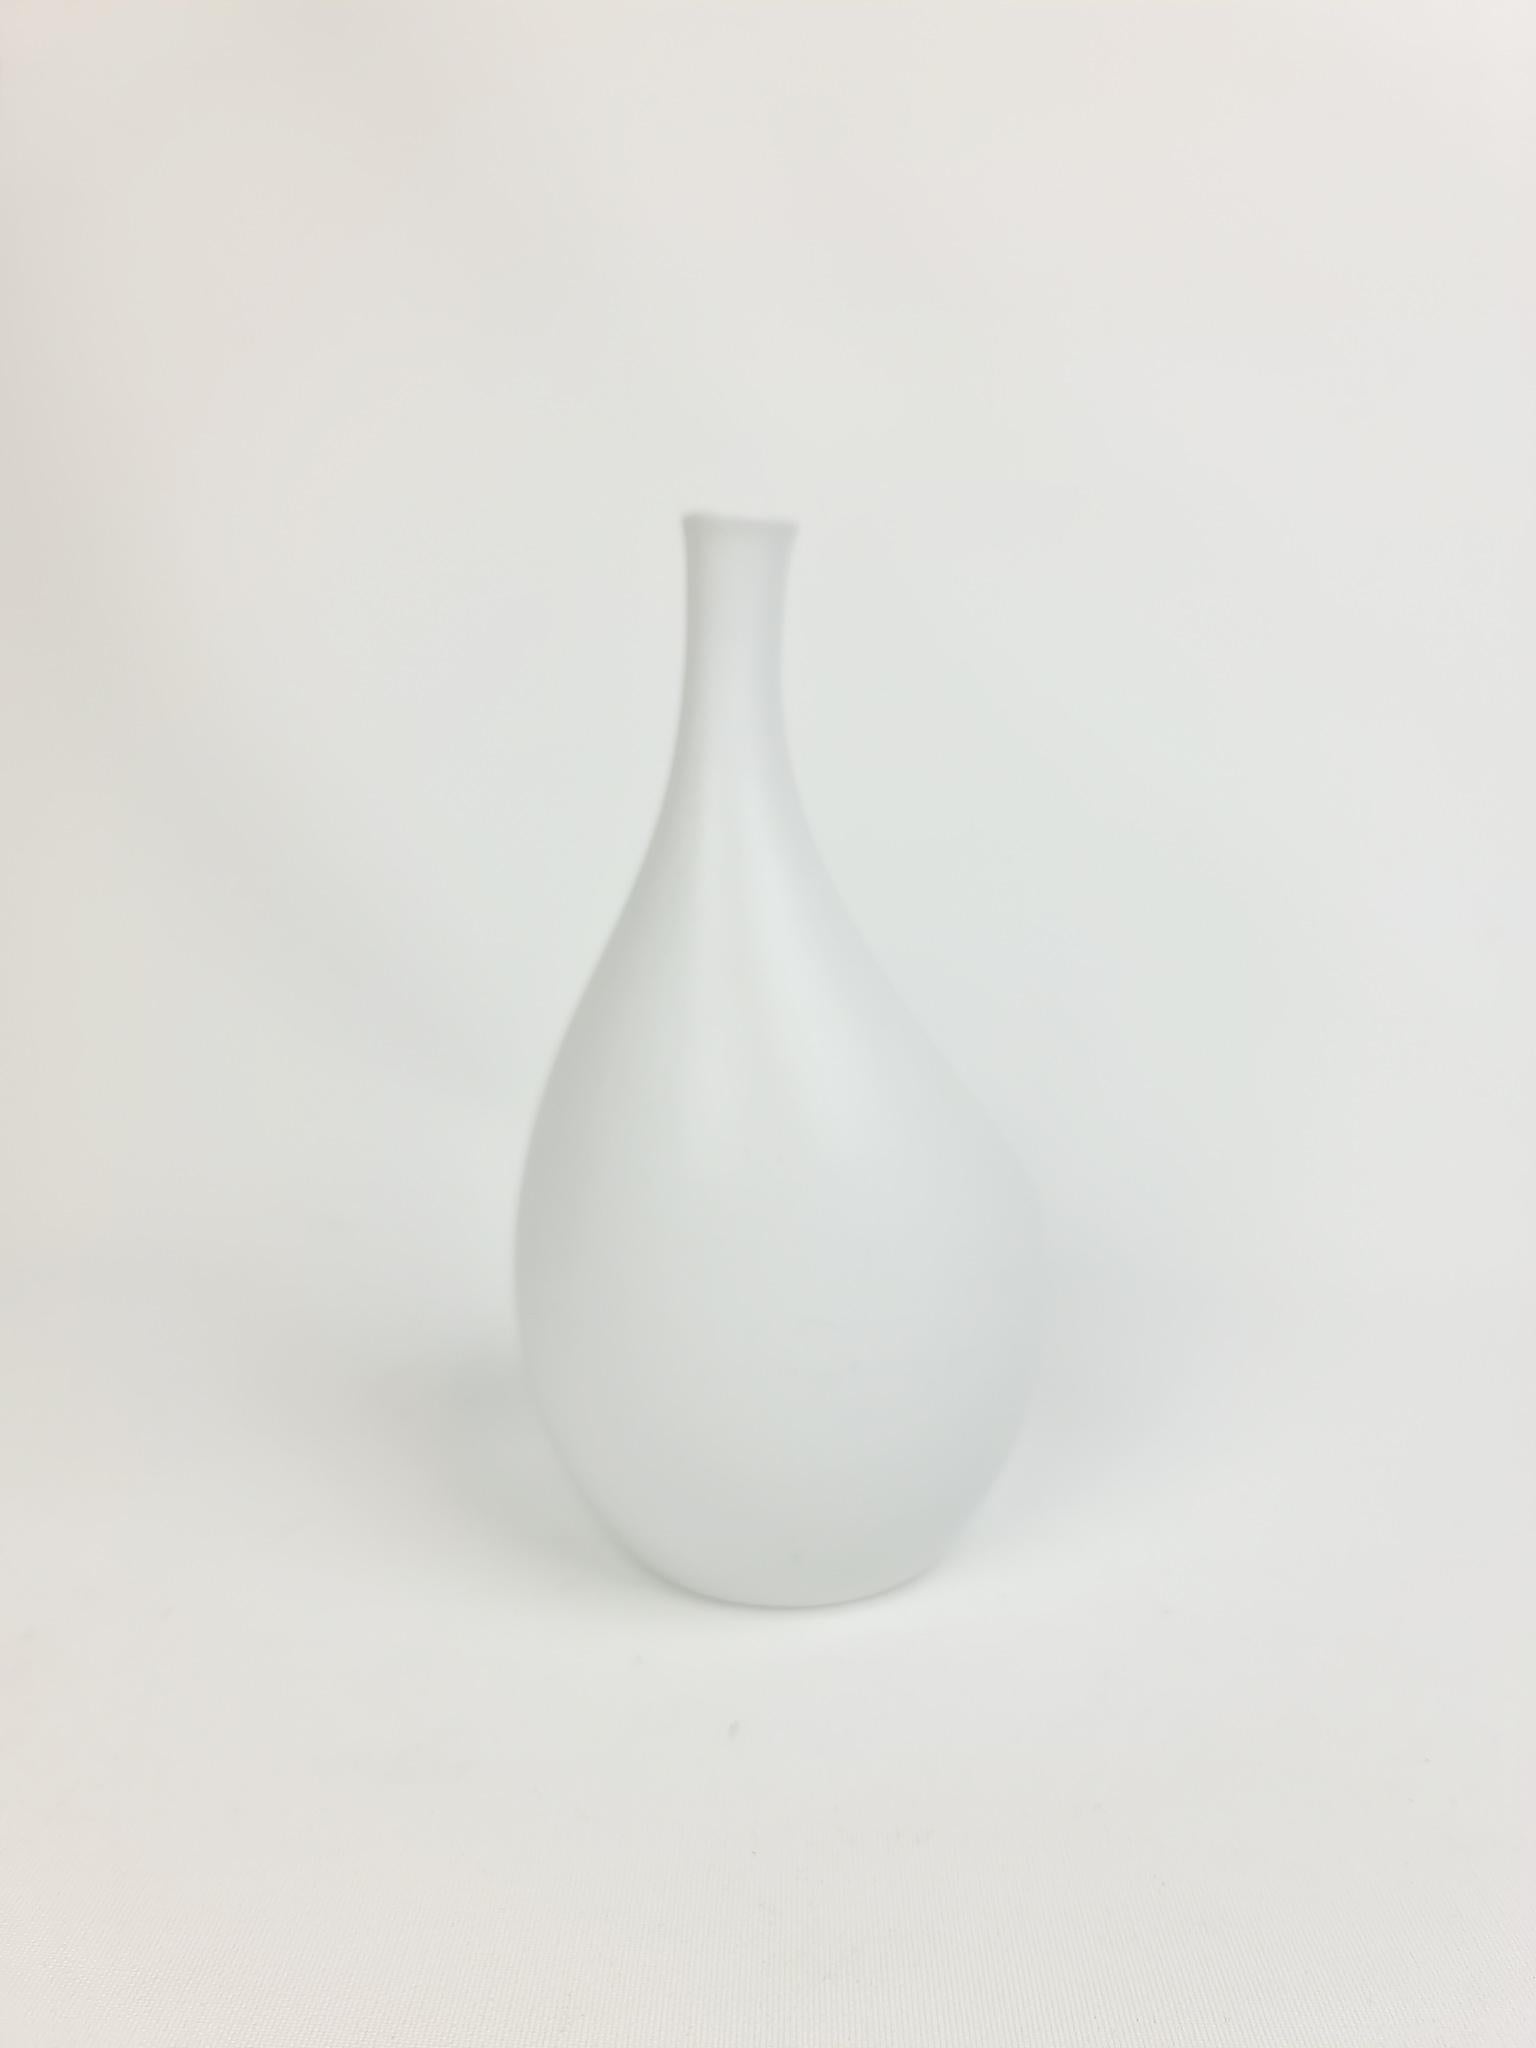 Swedish Midcentury Ceramic Vase 